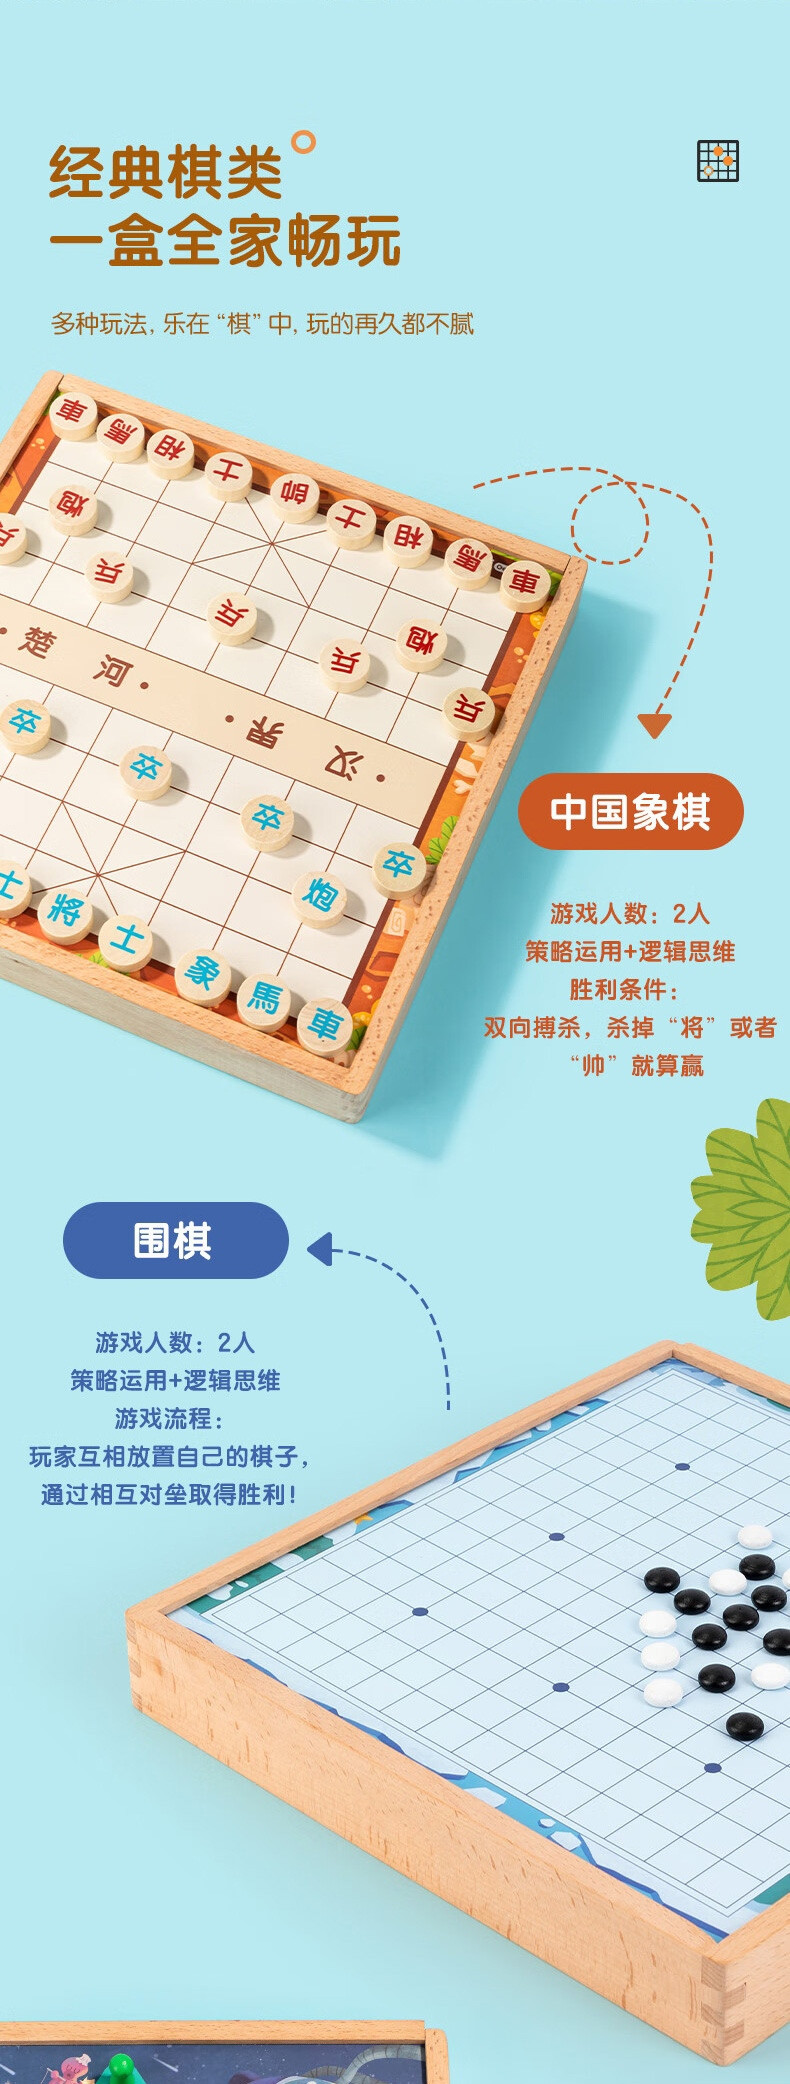 得力/deli 10合一围棋中国象棋五子棋女孩玩具多功能桌游亲子